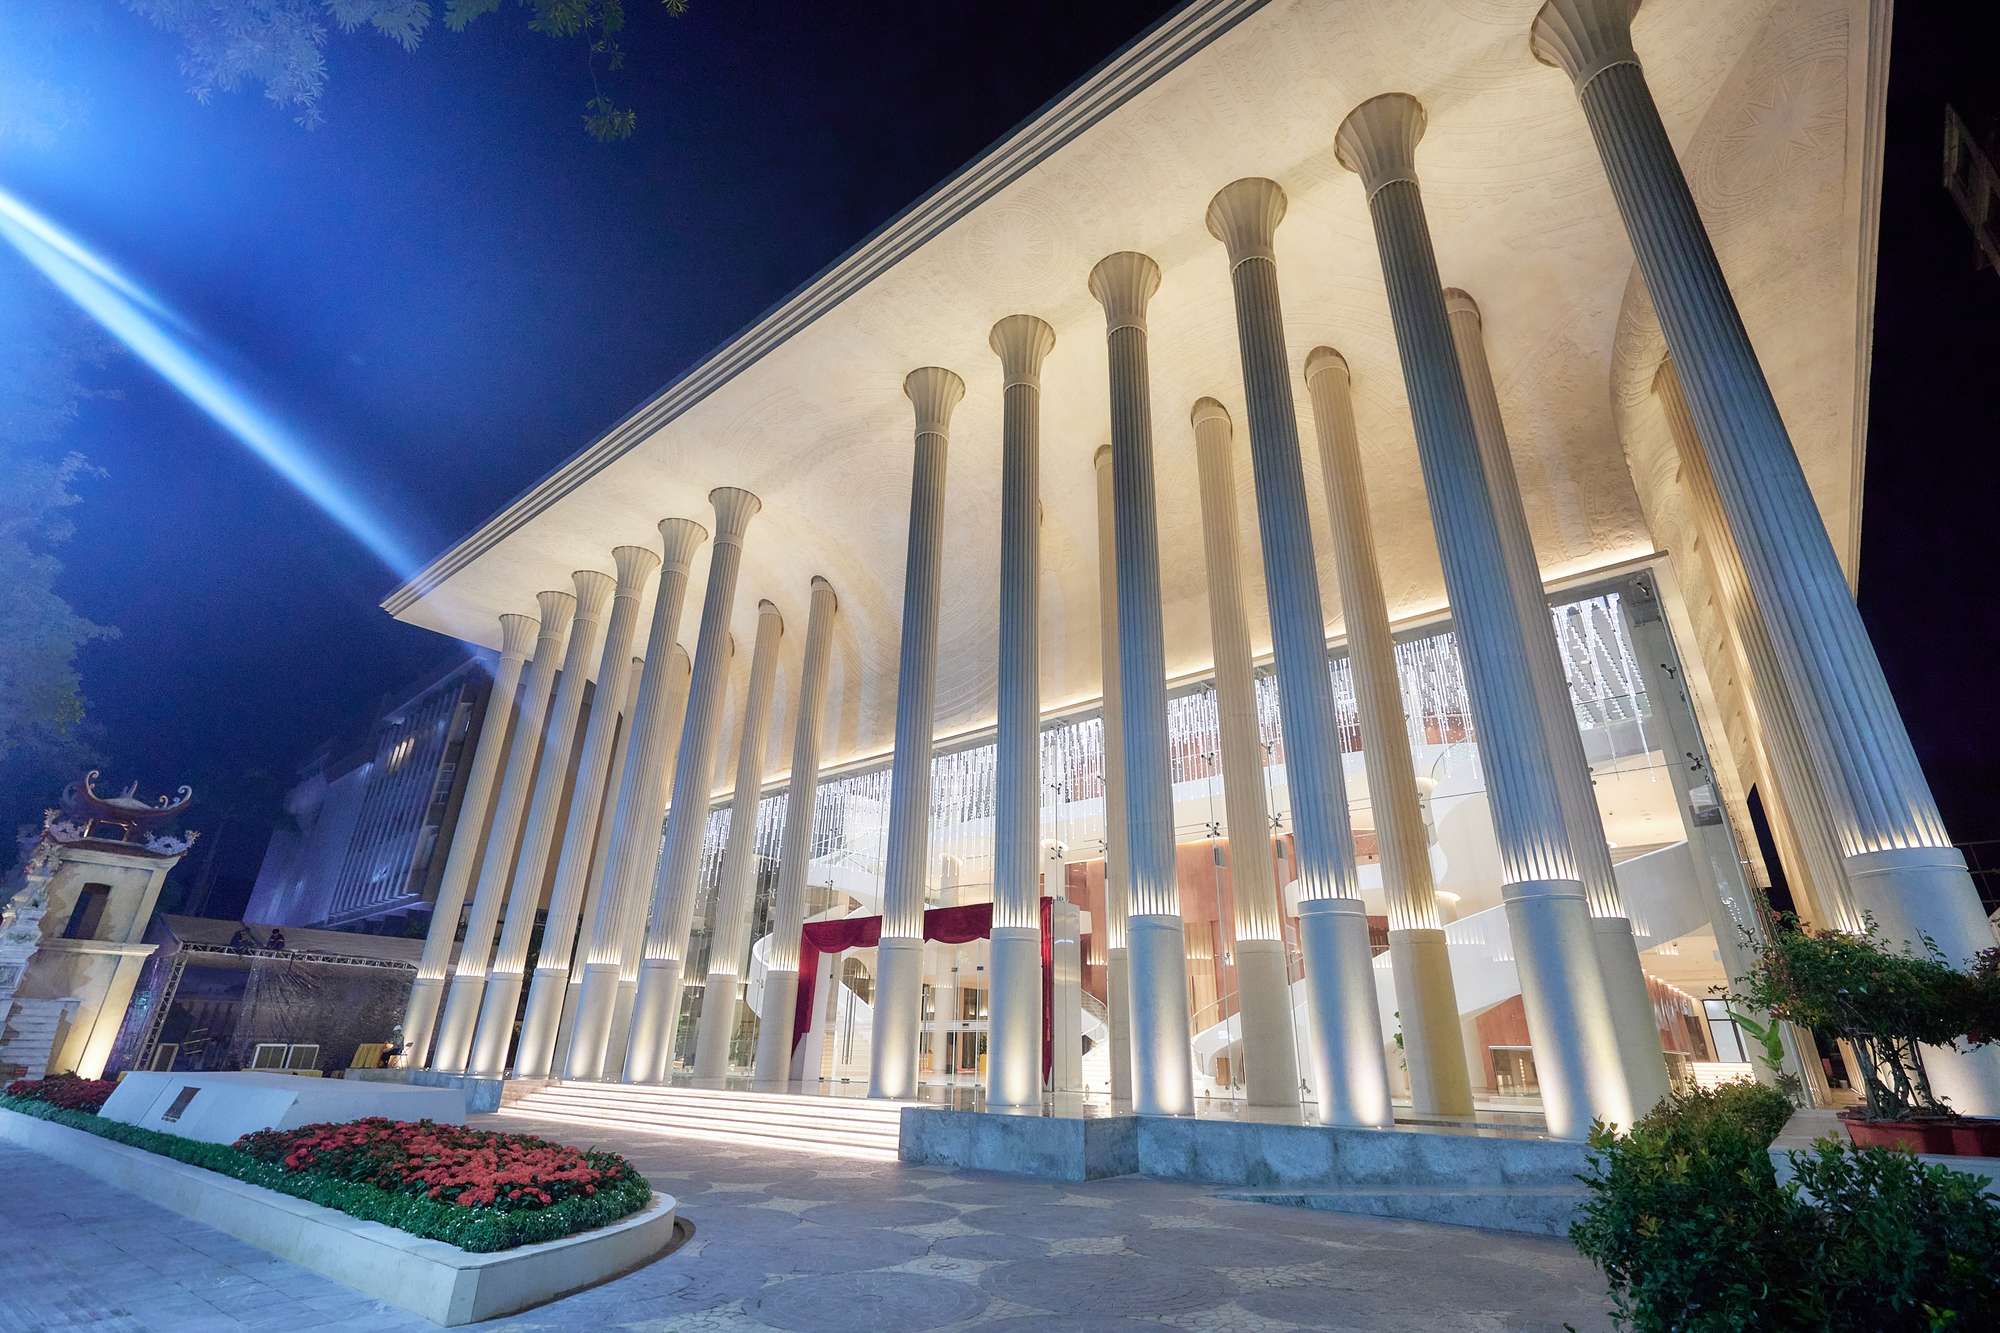 Cận cảnh Nhà hát Hồ Gươm với kiến trúc sang trọng và lộng lẫy từ 52 cột đá nguyên khối - Ảnh 13.